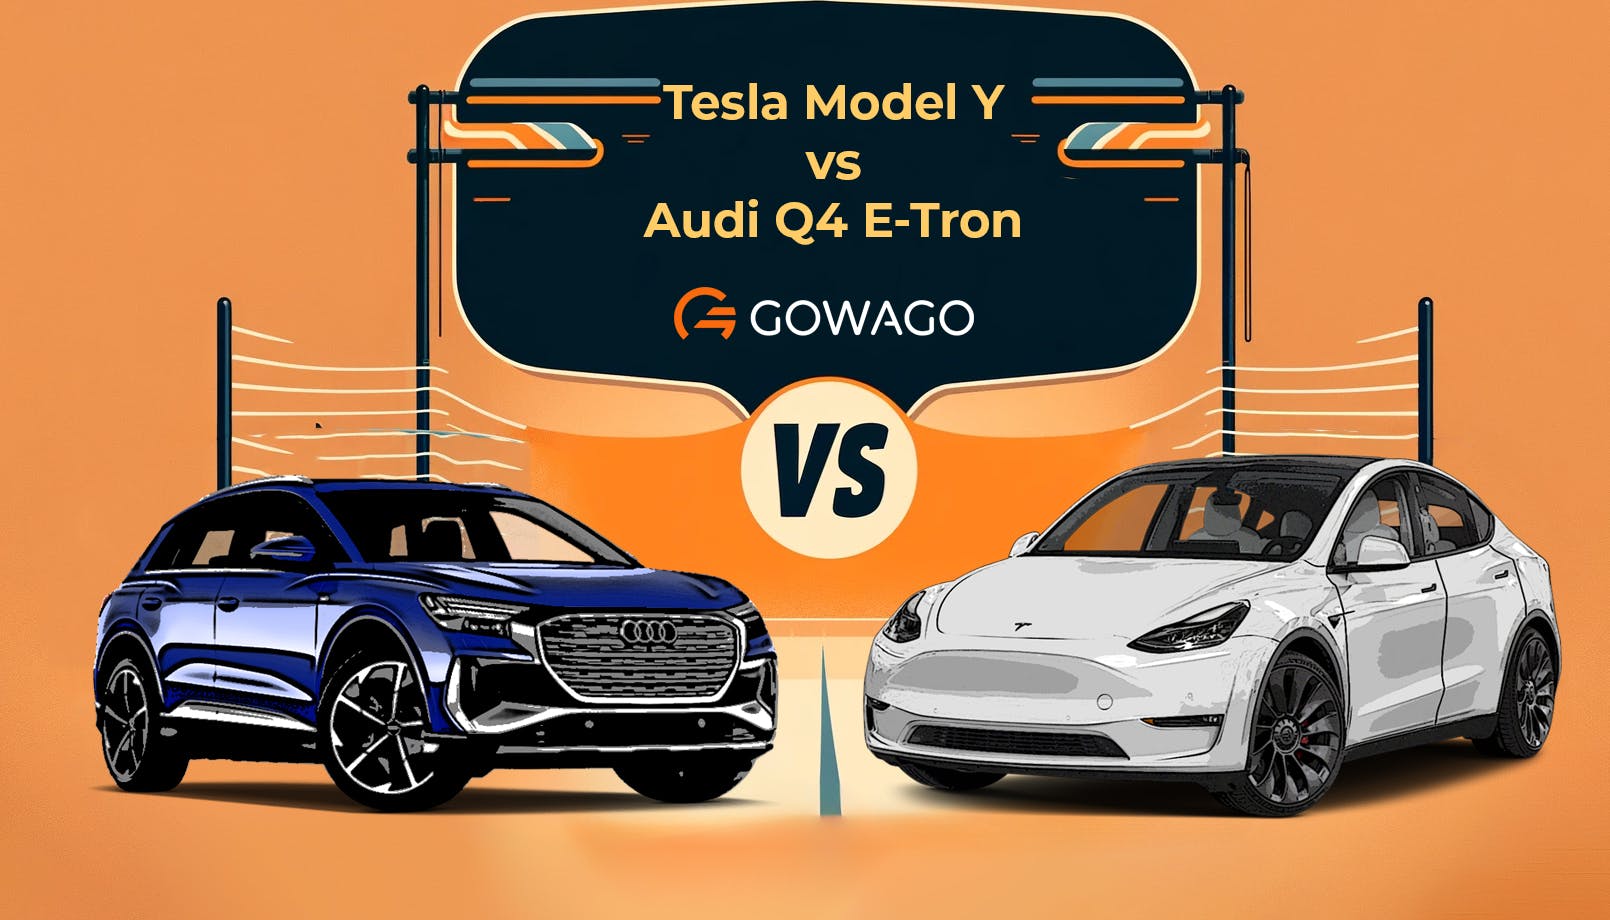 blog item card - Comparez les offres de leasing de la Tesla Model Y et de l'Audi Q4 E-Tron - Découvrez tout sur l'autonomie, les performances, l'équipement et la vie avec ces SUV électriques.